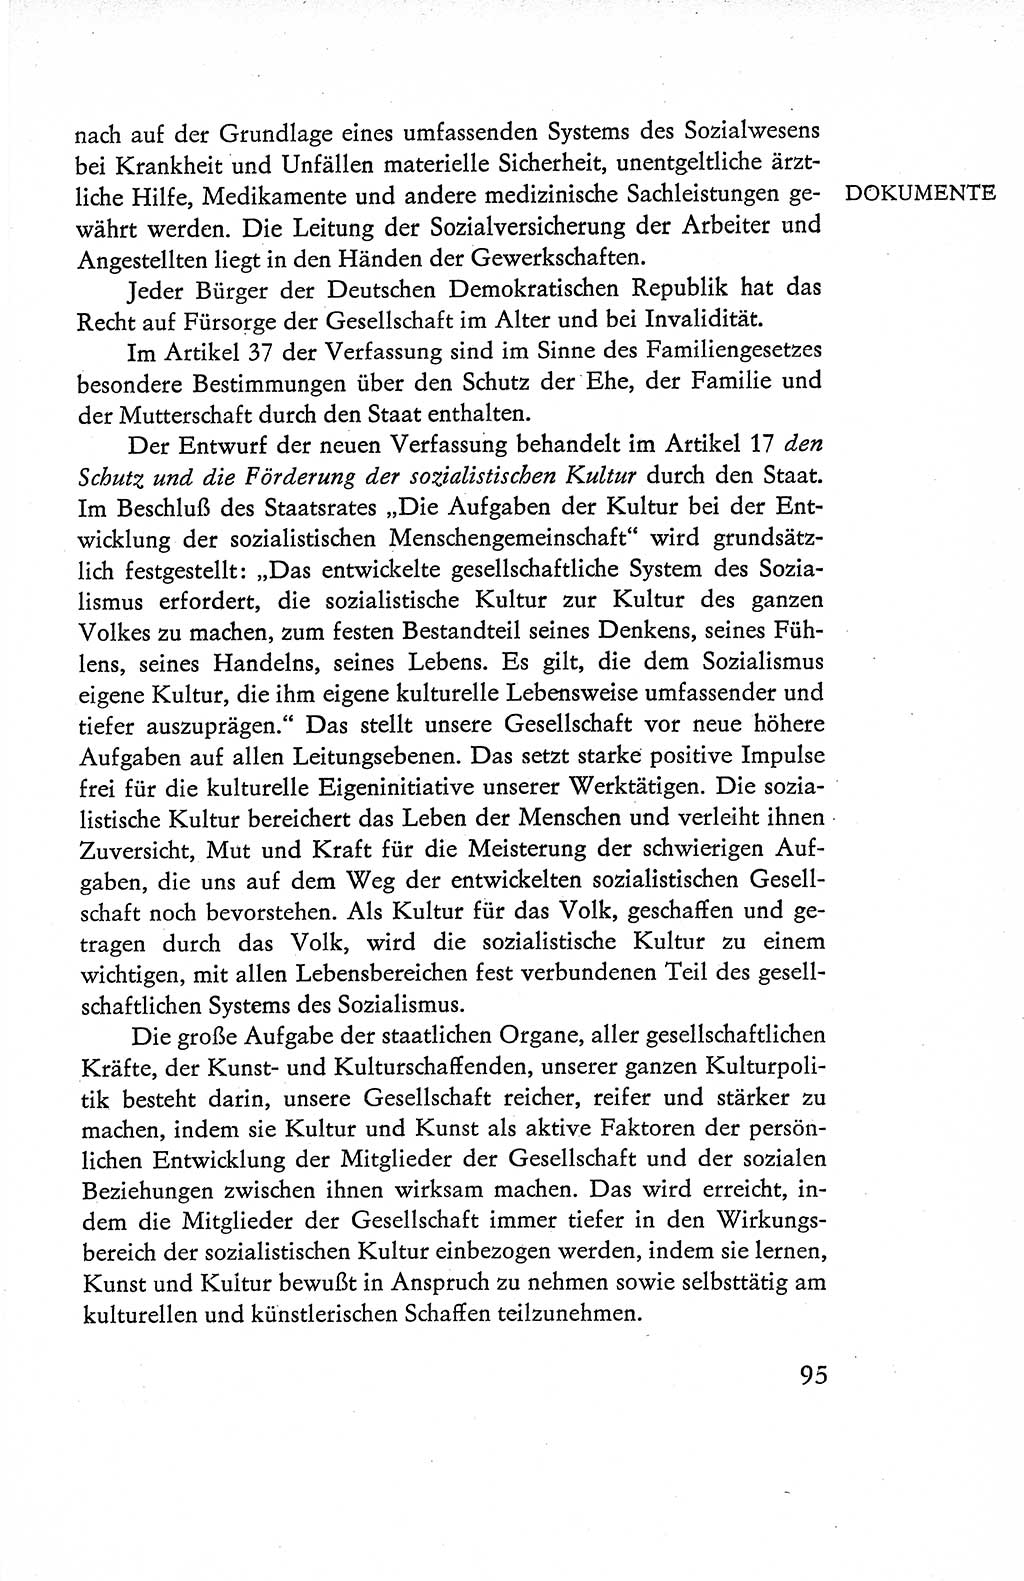 Verfassung der Deutschen Demokratischen Republik (DDR), Dokumente, Kommentar 1969, Band 1, Seite 95 (Verf. DDR Dok. Komm. 1969, Bd. 1, S. 95)